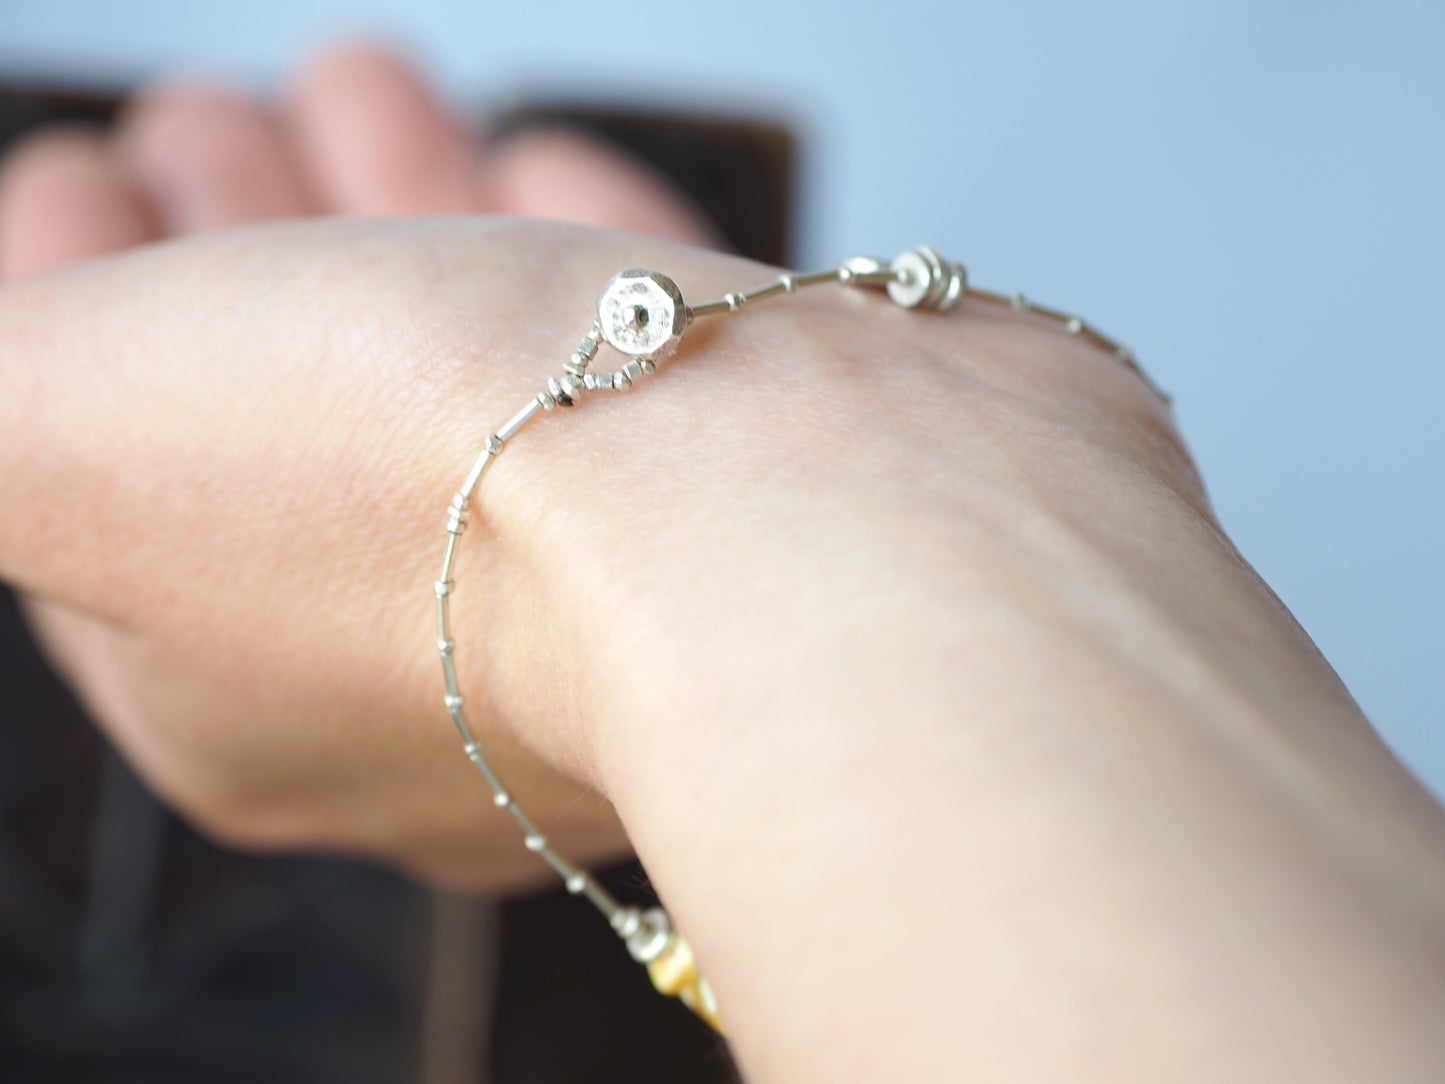 Honey-amber silver bracelet